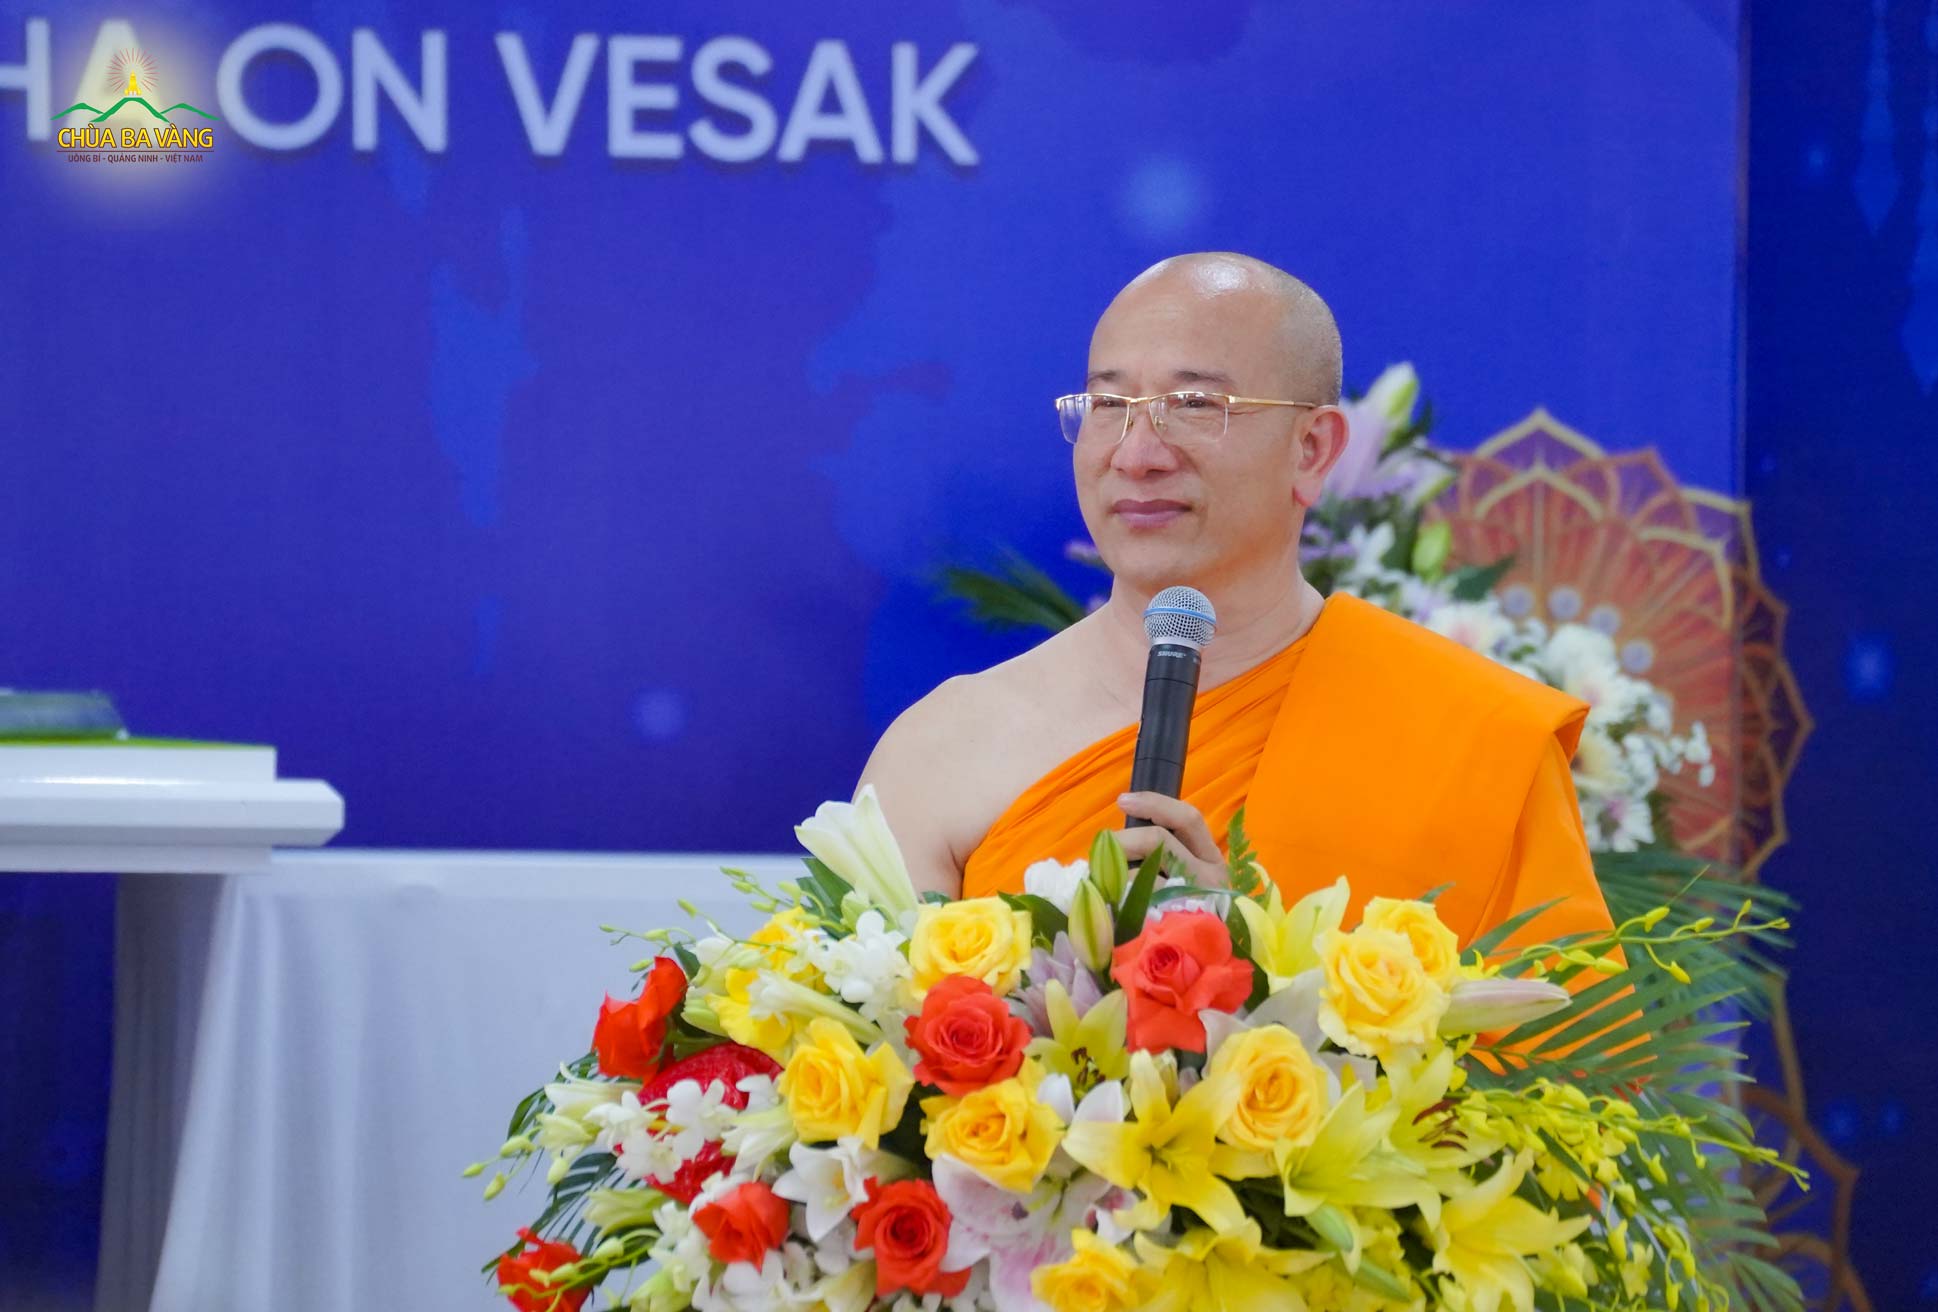 Thượng tọa Thích Trúc Thái Minh bày tỏ niềm hạnh phúc trước sự hiện diện của chư Tôn đức lãnh đạo của GHPGVN và chư Tôn giáo phẩm lãnh đạo các tổ chức GHPG Quốc tế